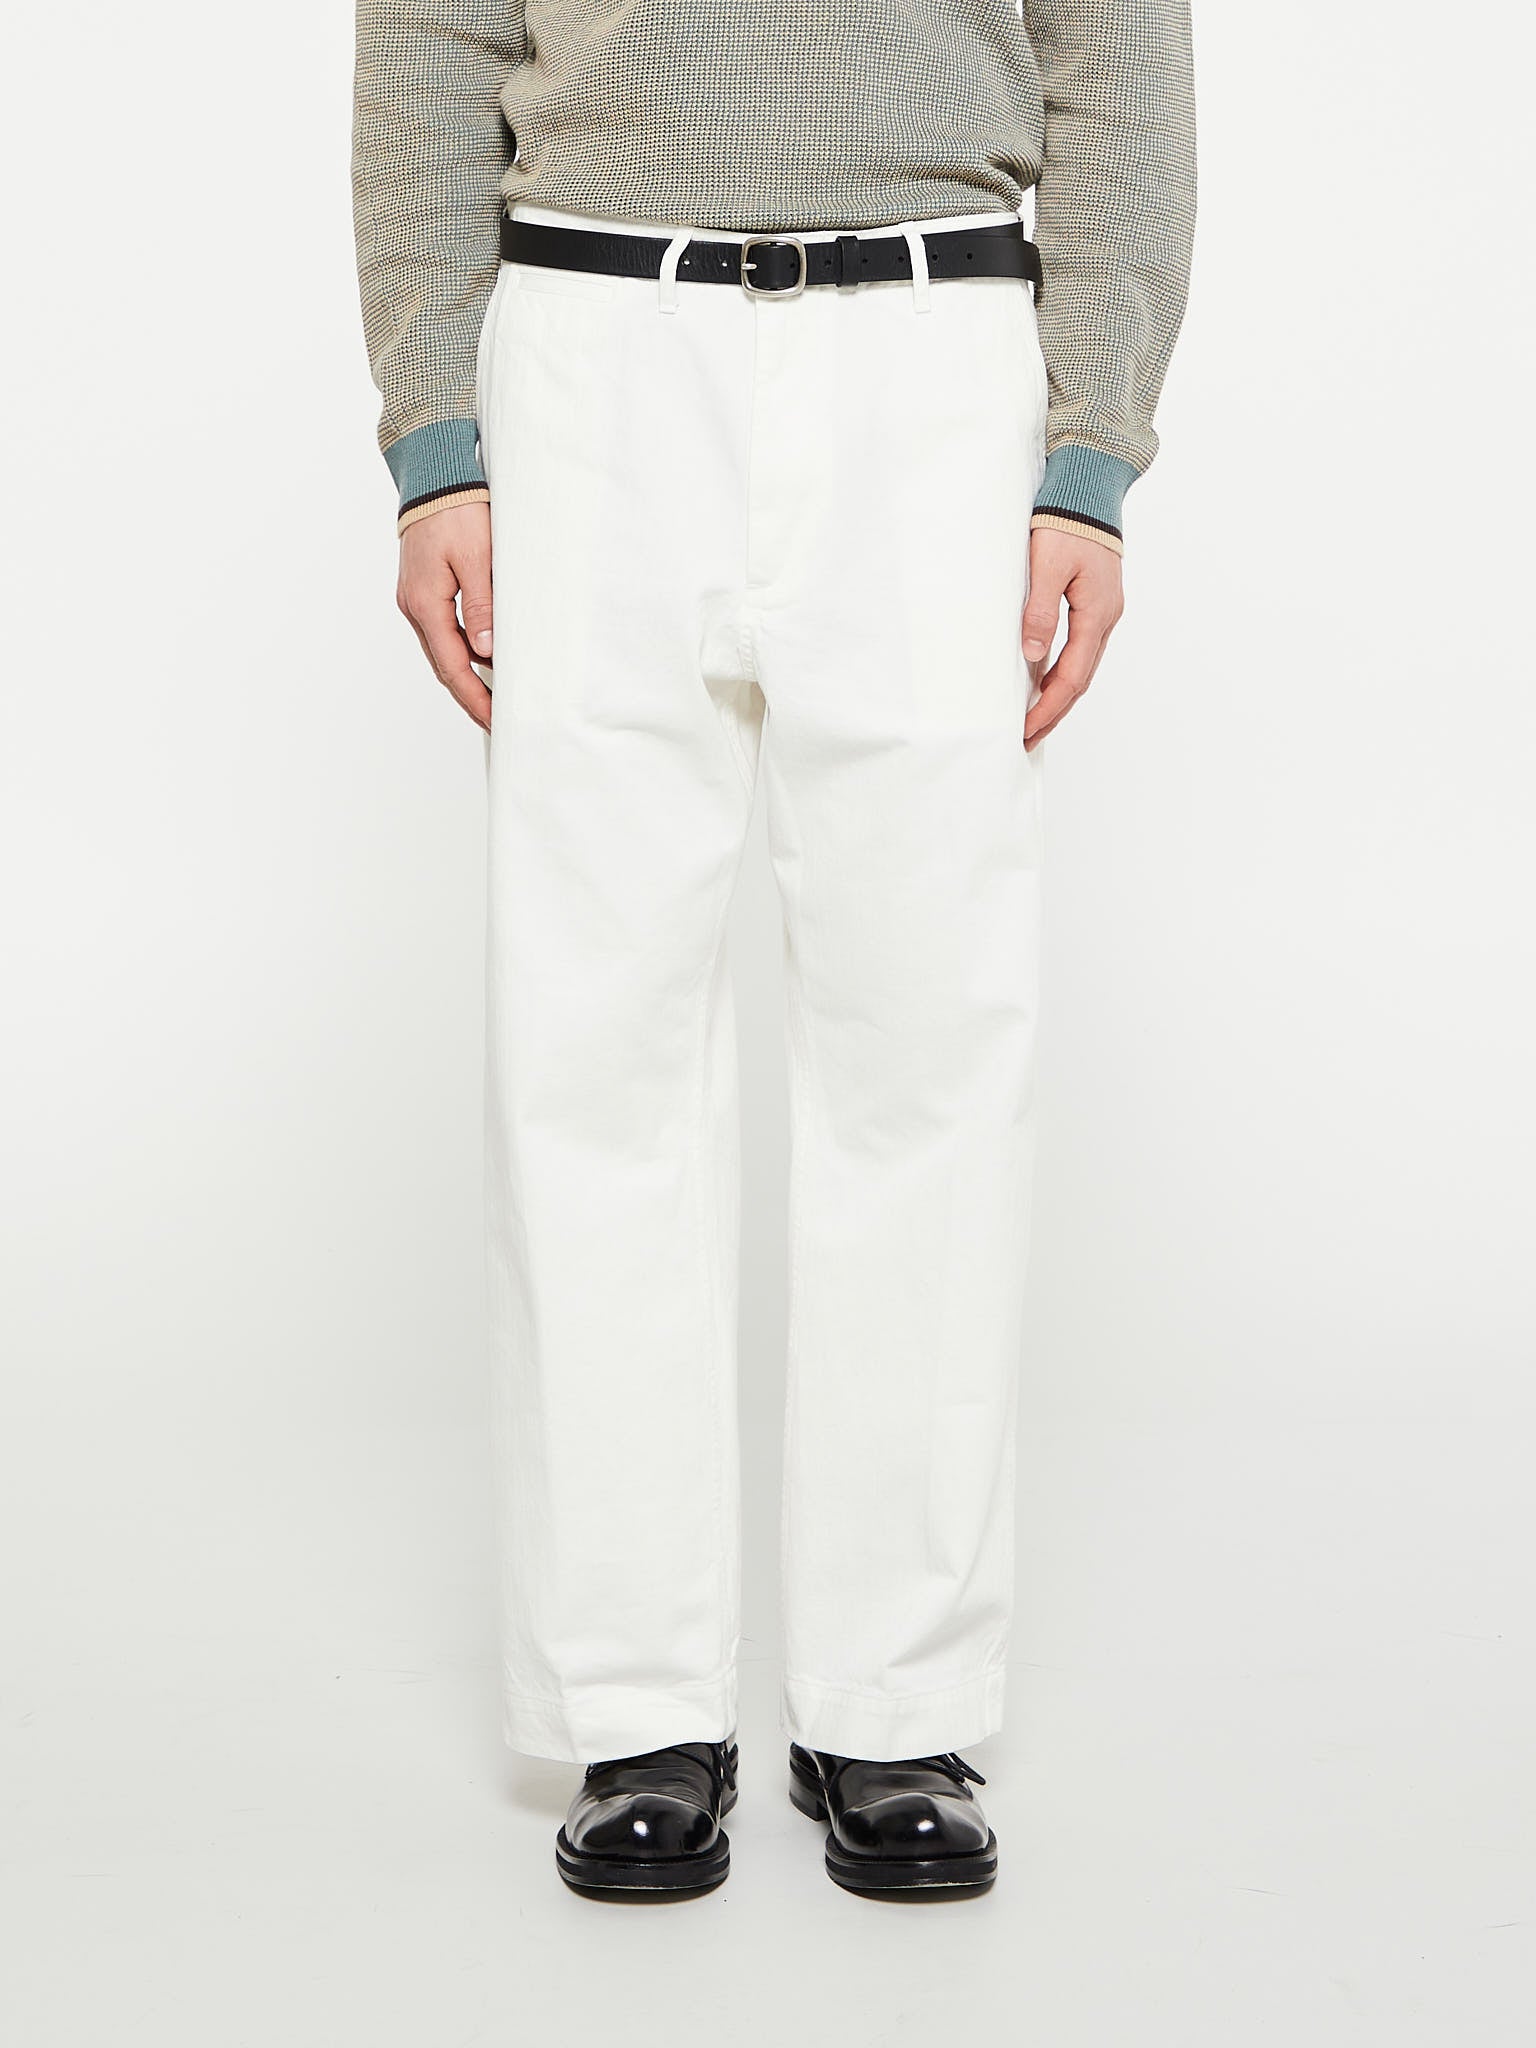 Beams Plus - Mil Trousers Herringbone in White